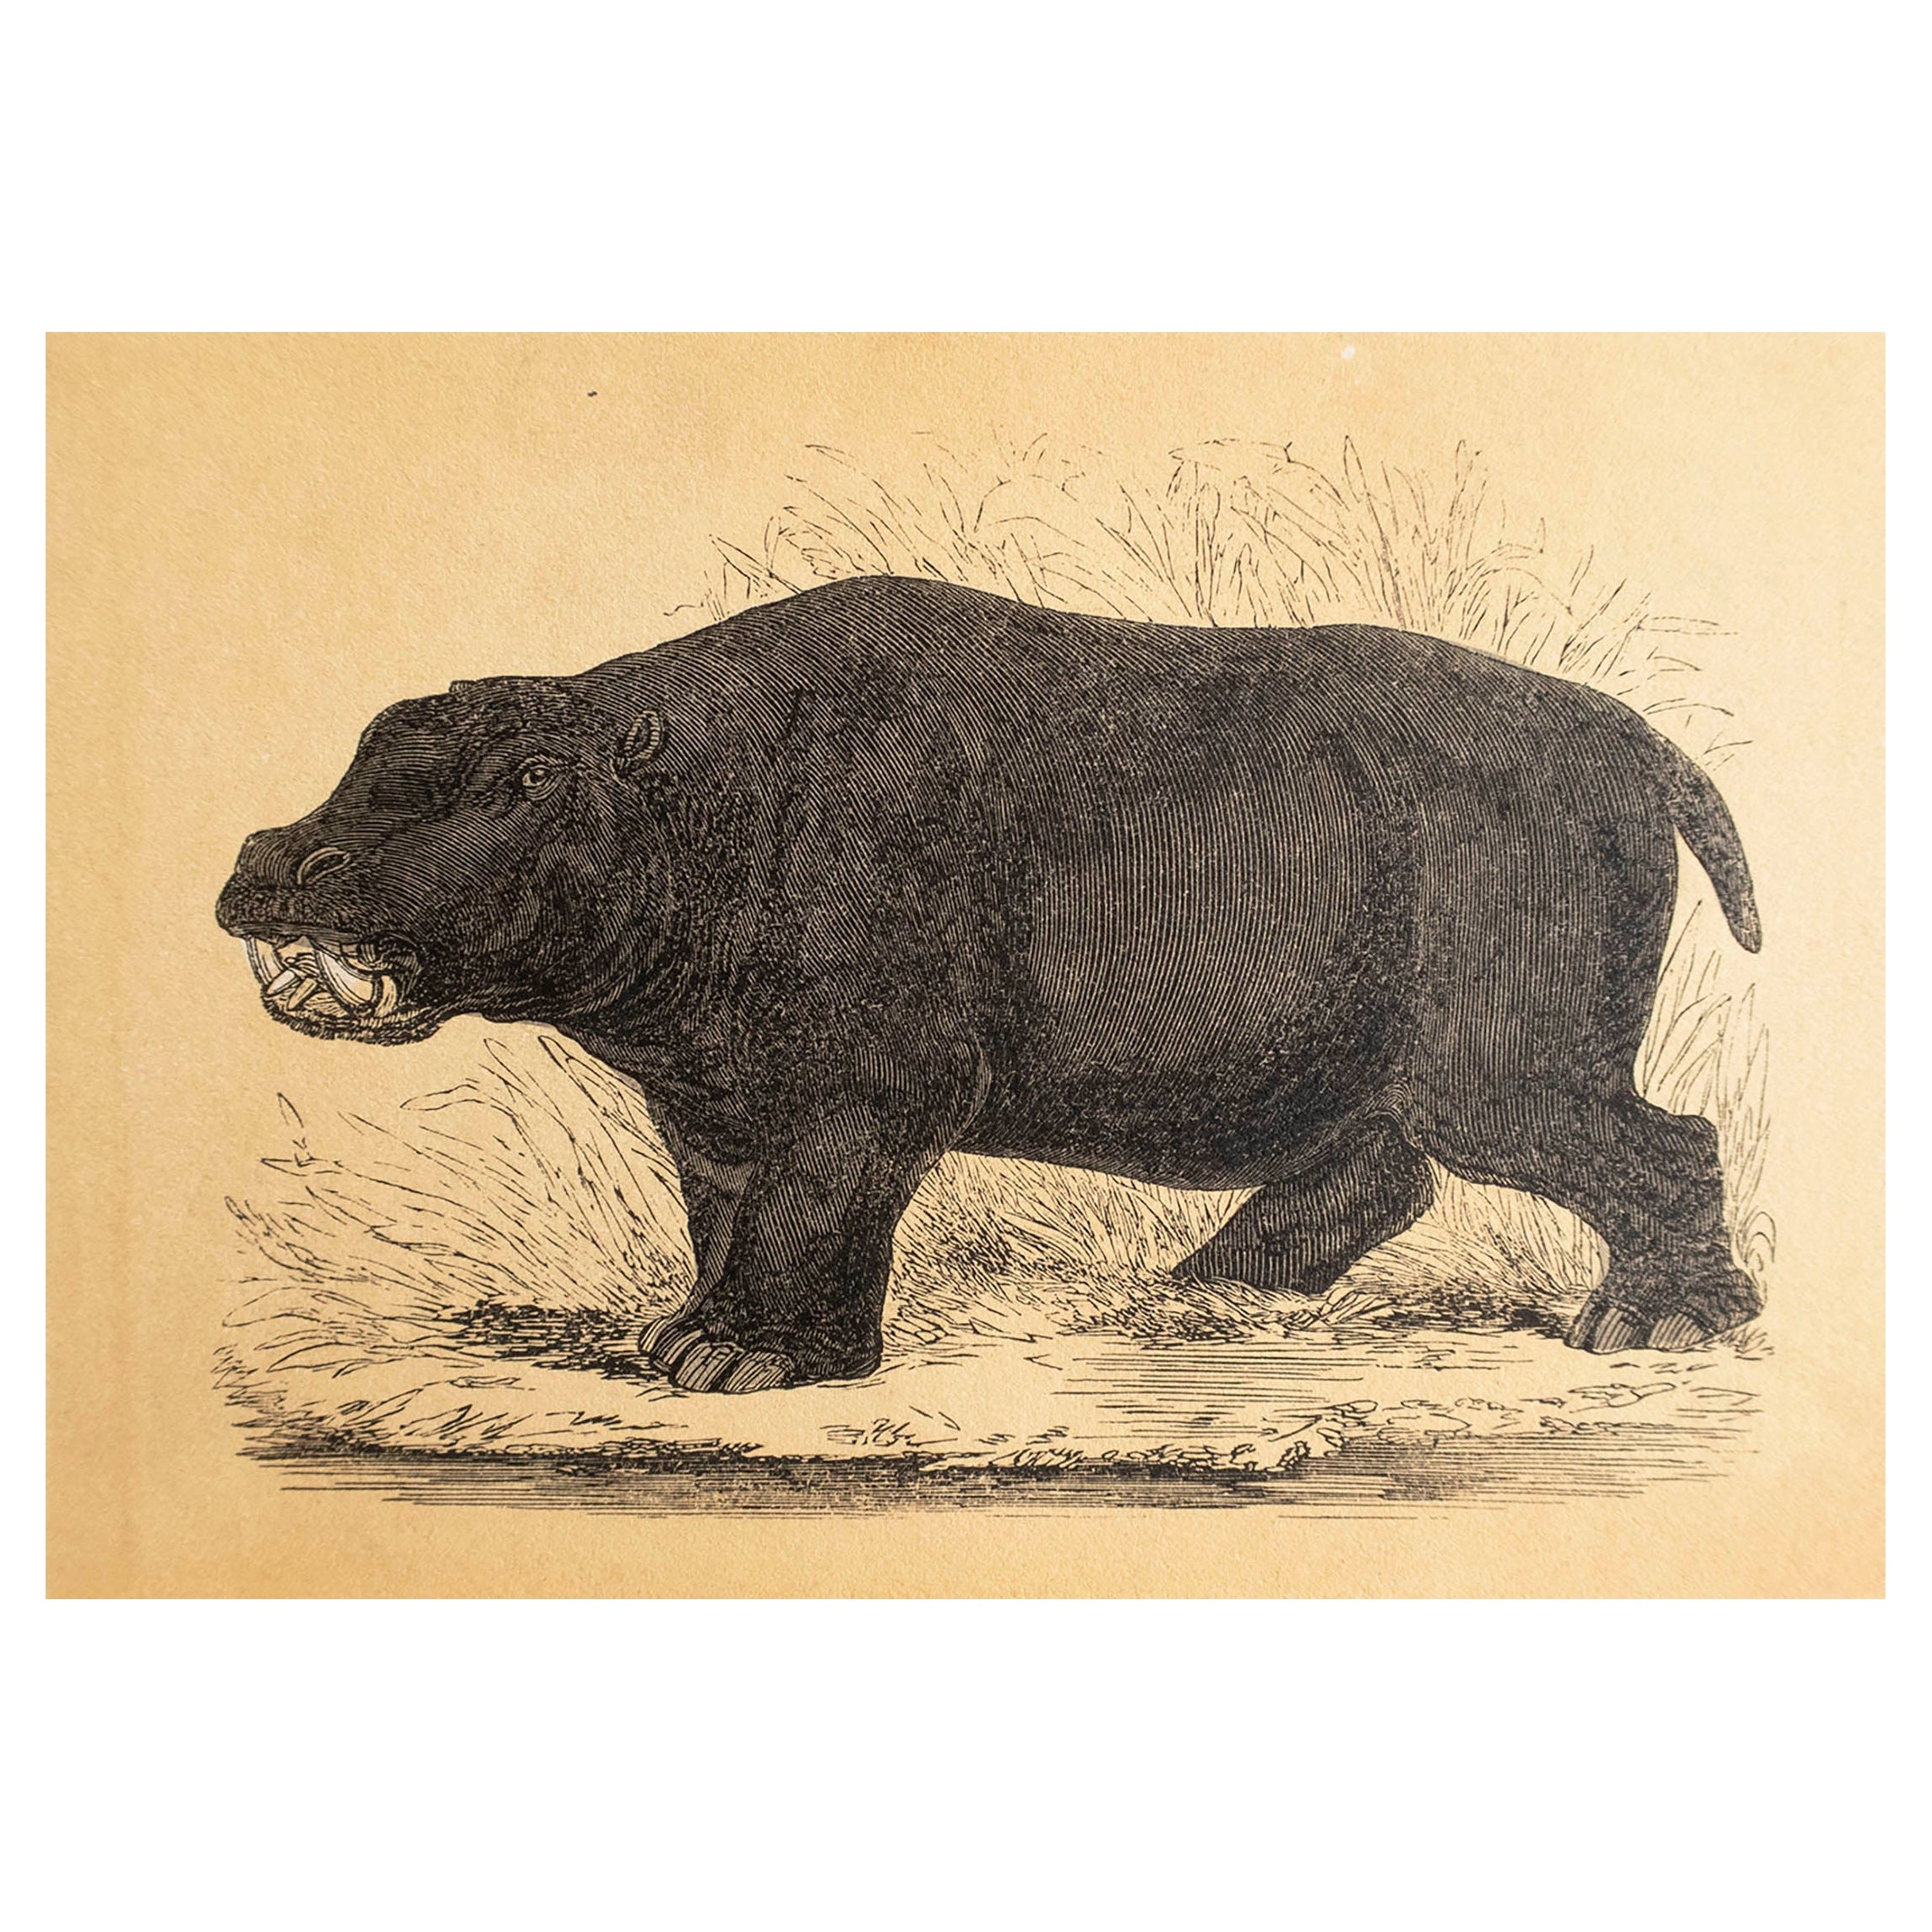  Gravure ancienne originale d'un hippopotame, vers 1850